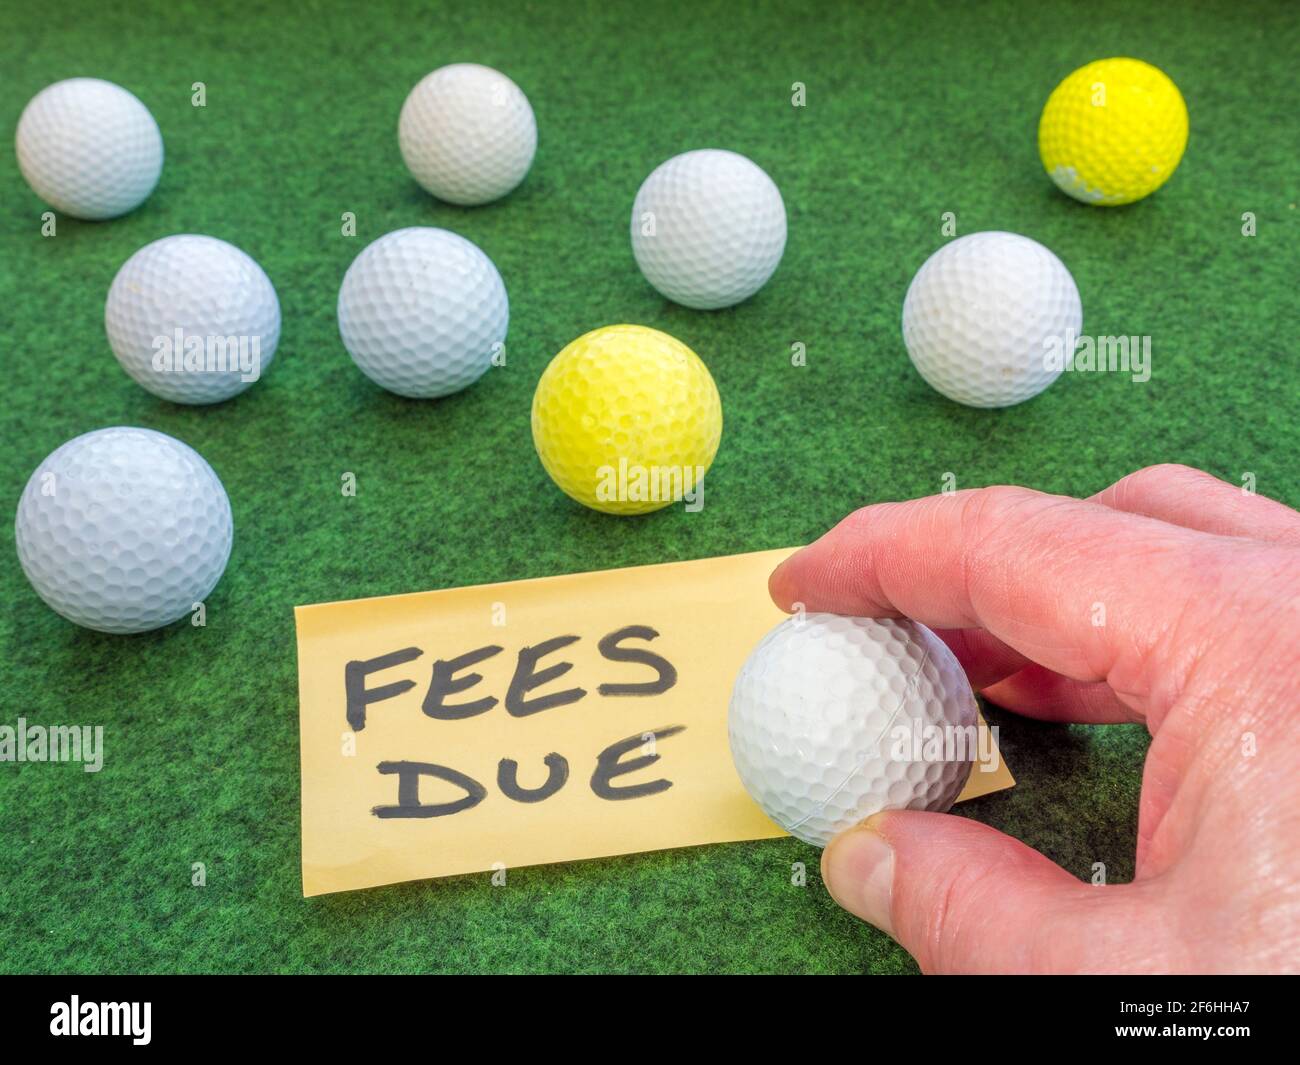 Mano de un hombre sosteniendo una pelota de golf en una nota de pago, entre otras bolas de golf en una superficie verde. Concepto de cargos por el uso de un club de golf / campo de golf. Foto de stock